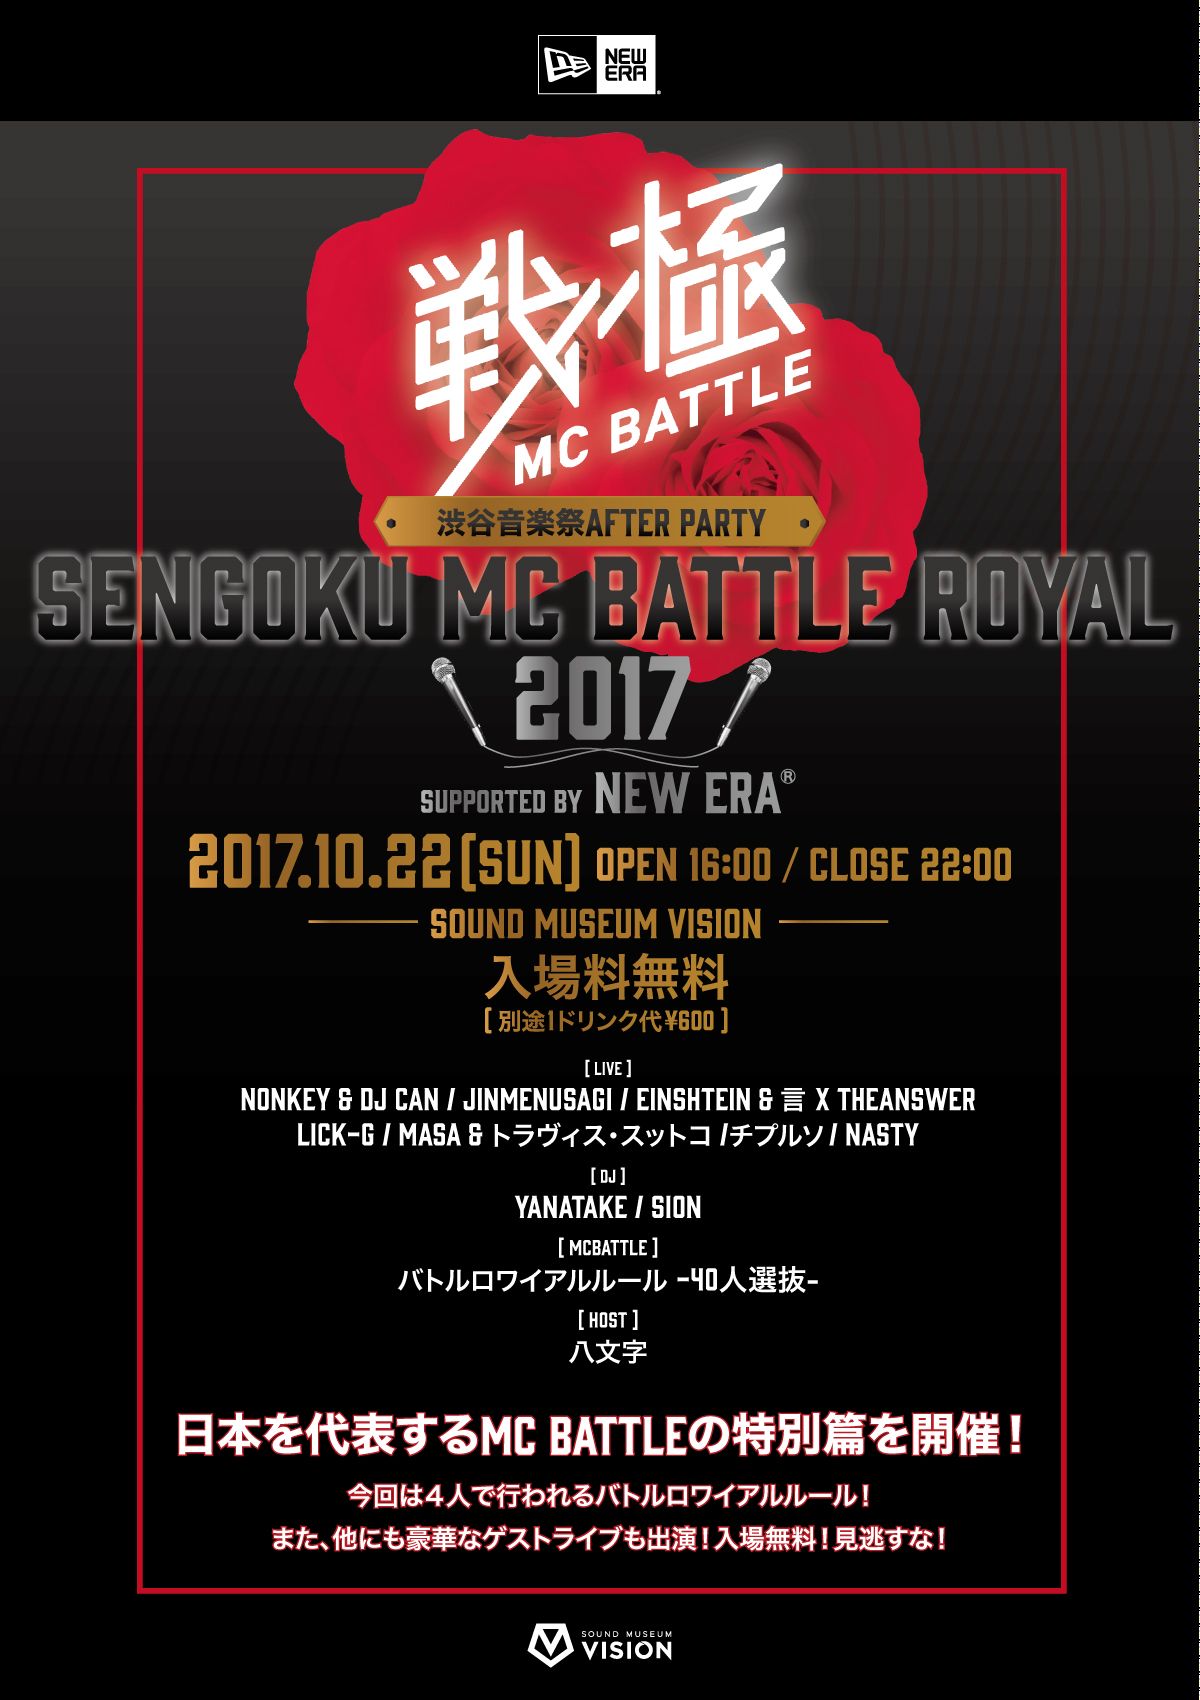 渋谷音楽祭 AFTER PARTY 戦極MCBATTLE ROYALE 2017 supported by NEW ERA